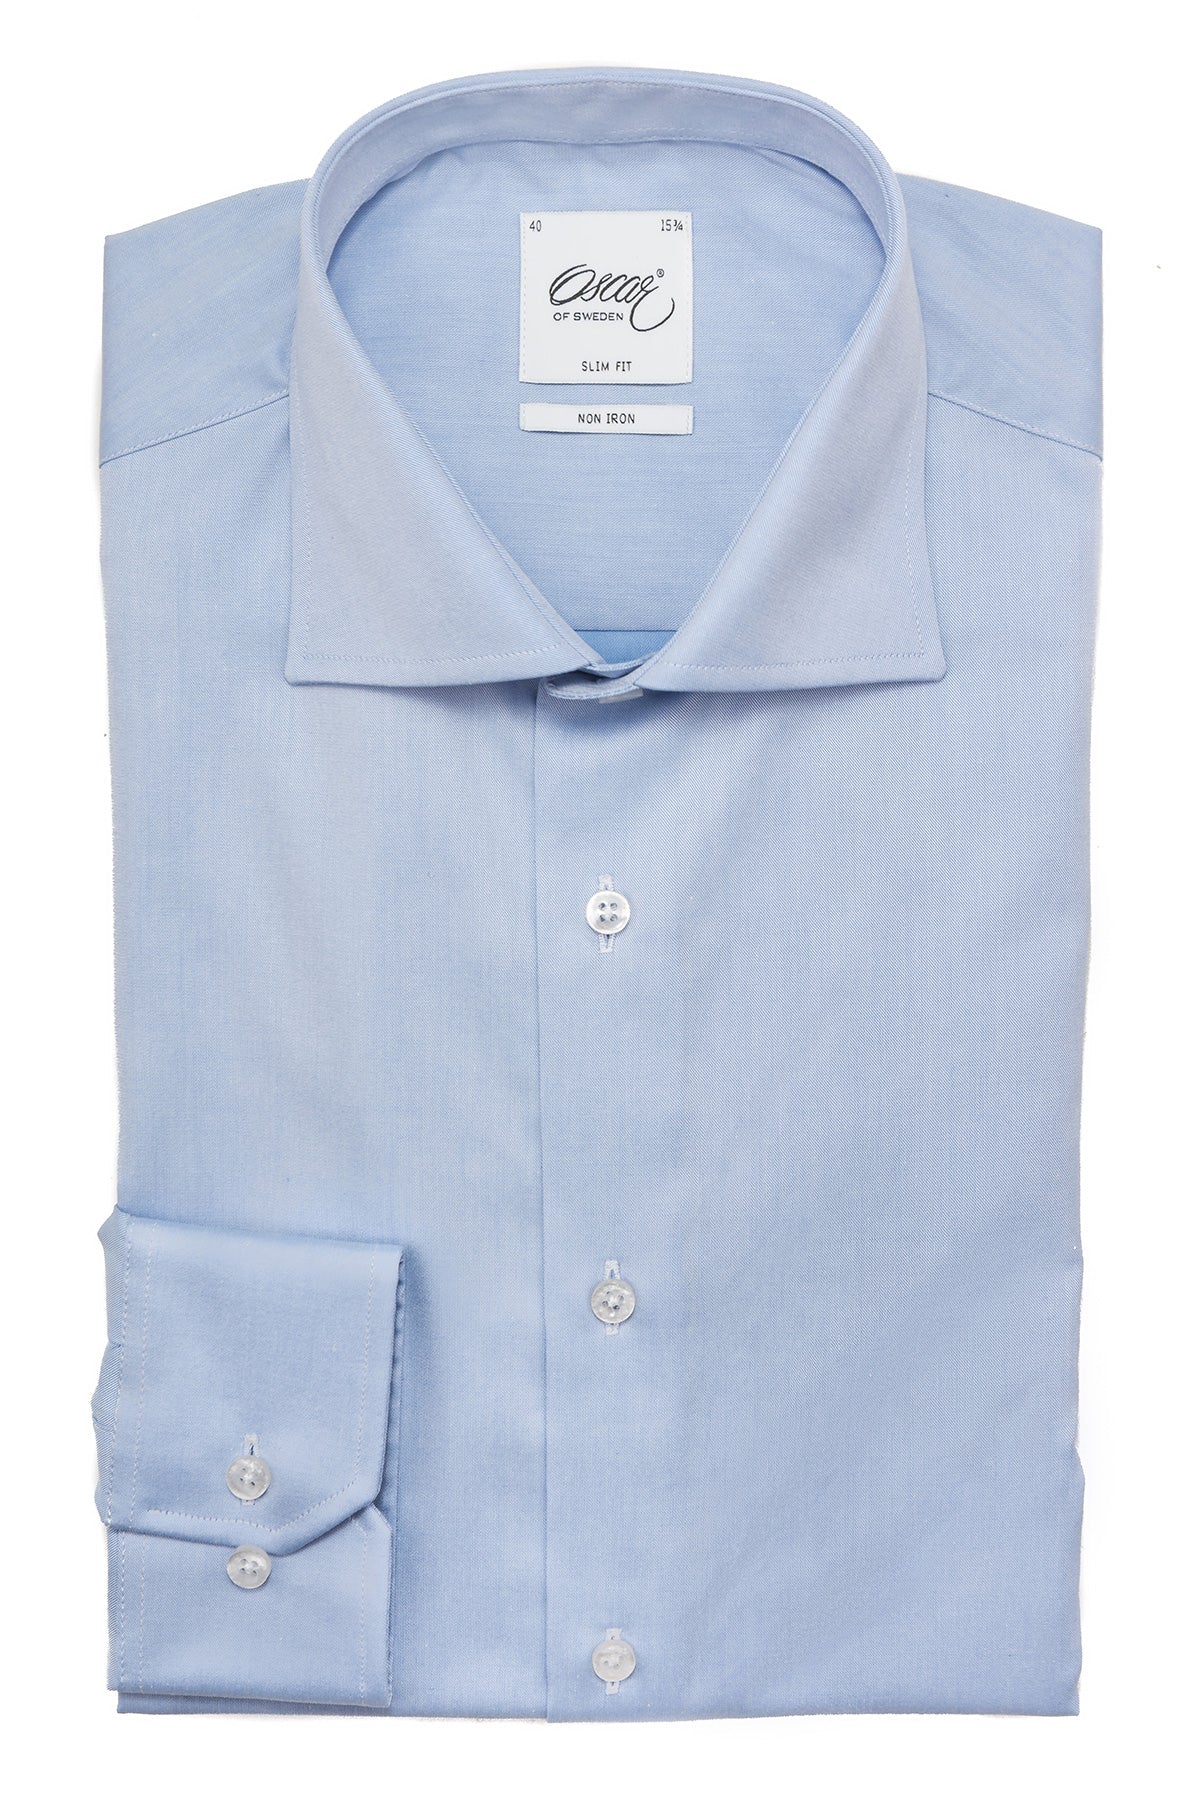 Light blue non iron regular fit shirt